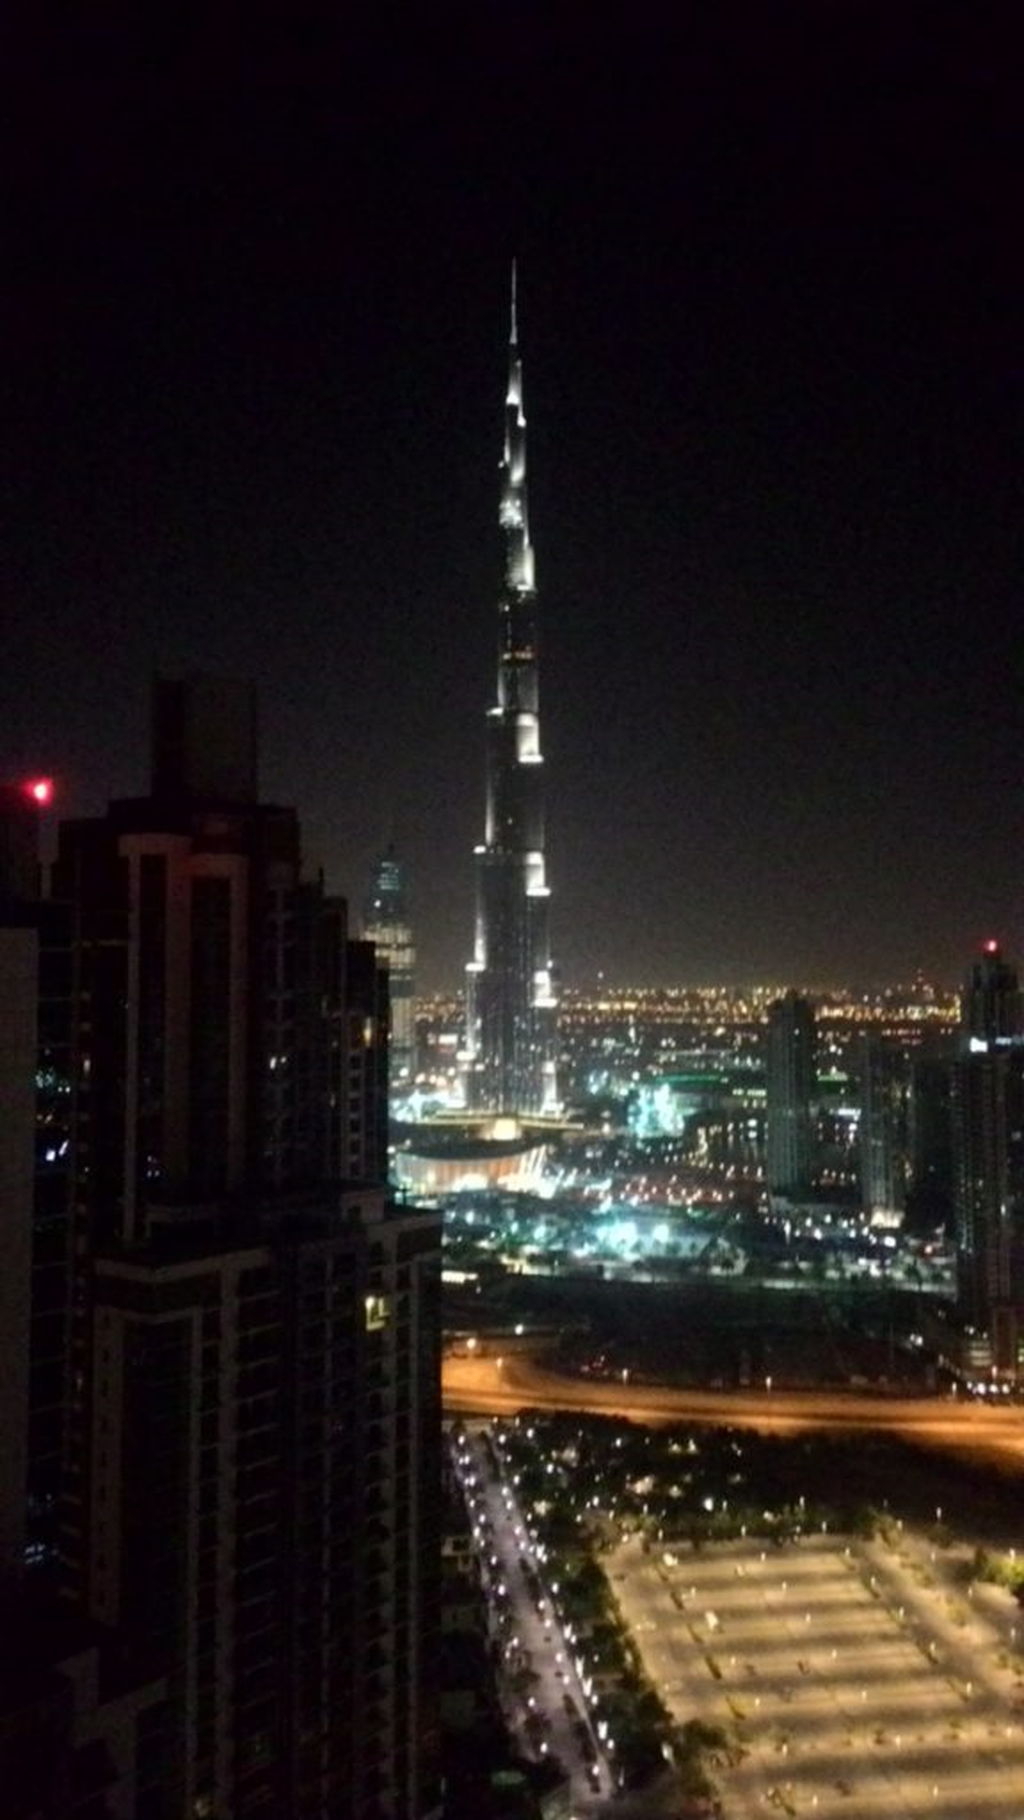 Burj Khalifa rəqs fəvvarələrində işıq və səs şousu